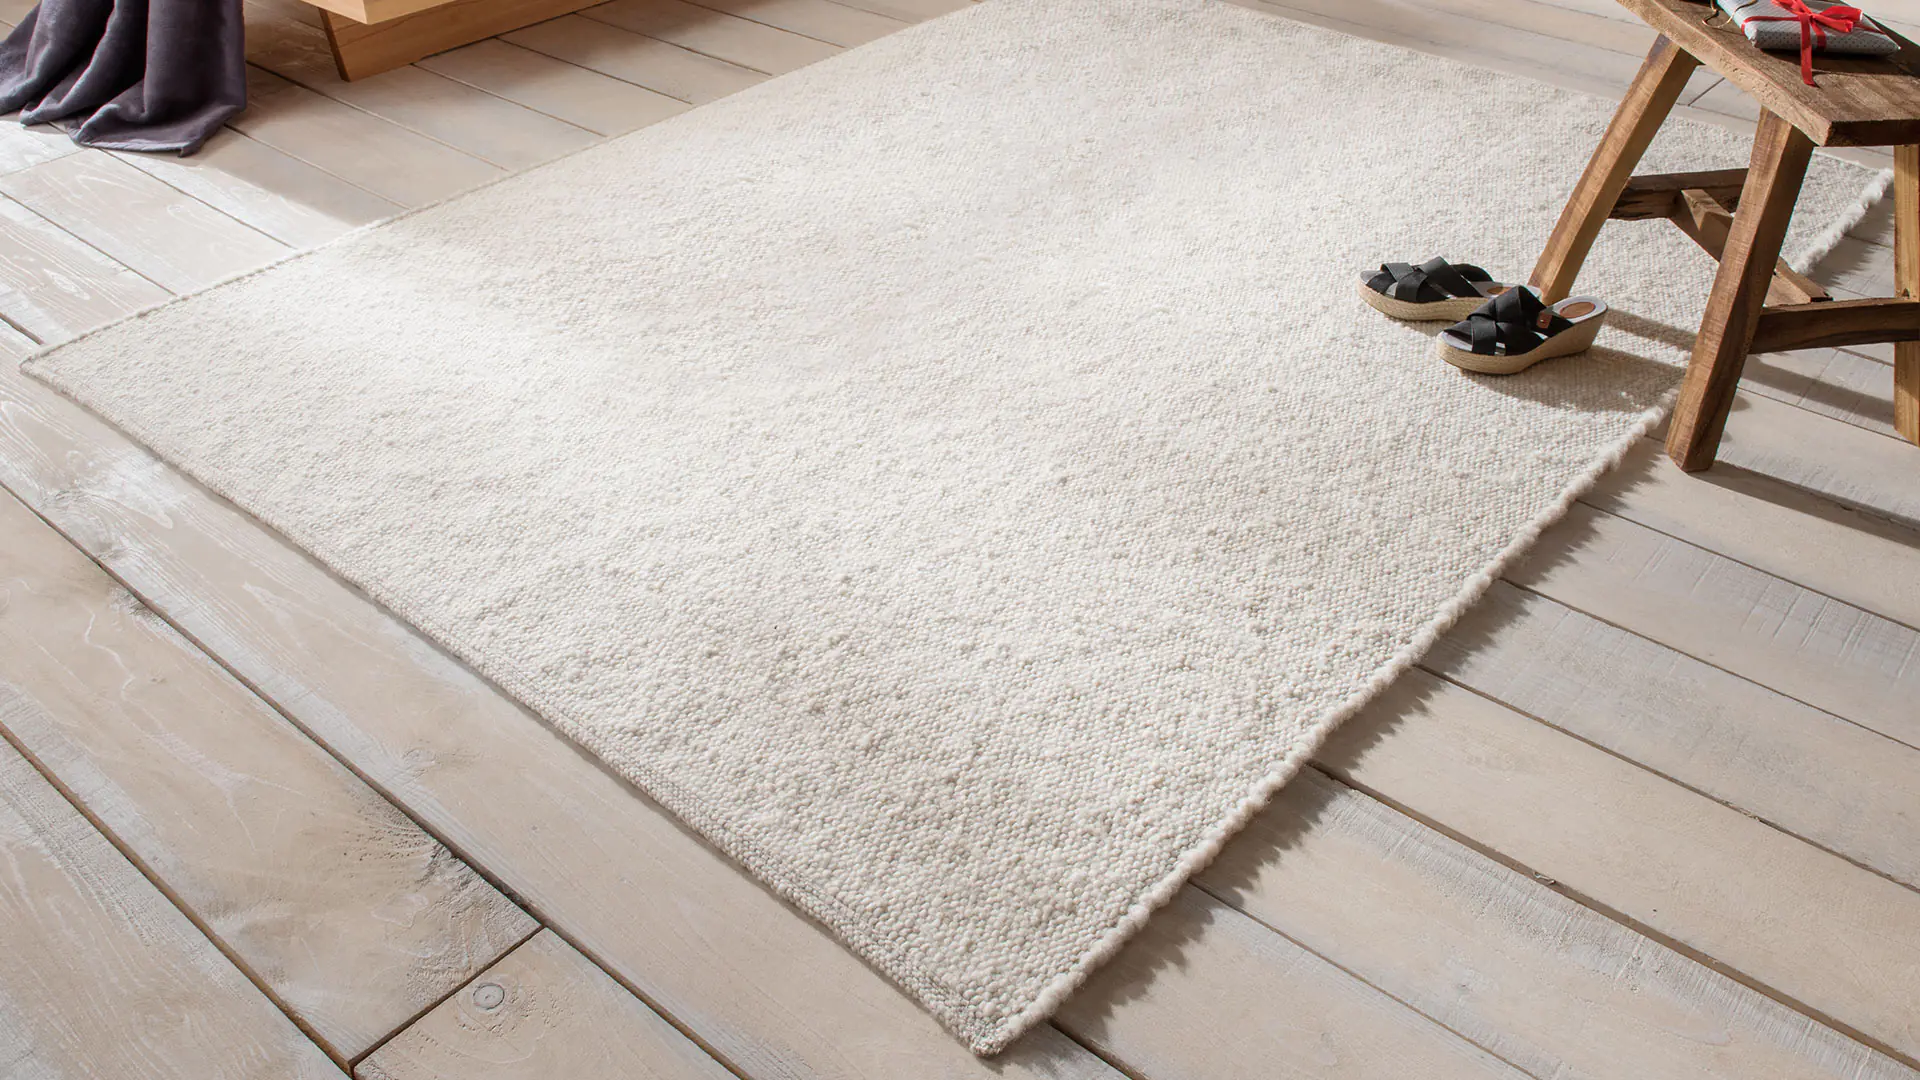 Teppich Unterlage - Unsere Erfahrung für Ihre Teppiche!Unsere